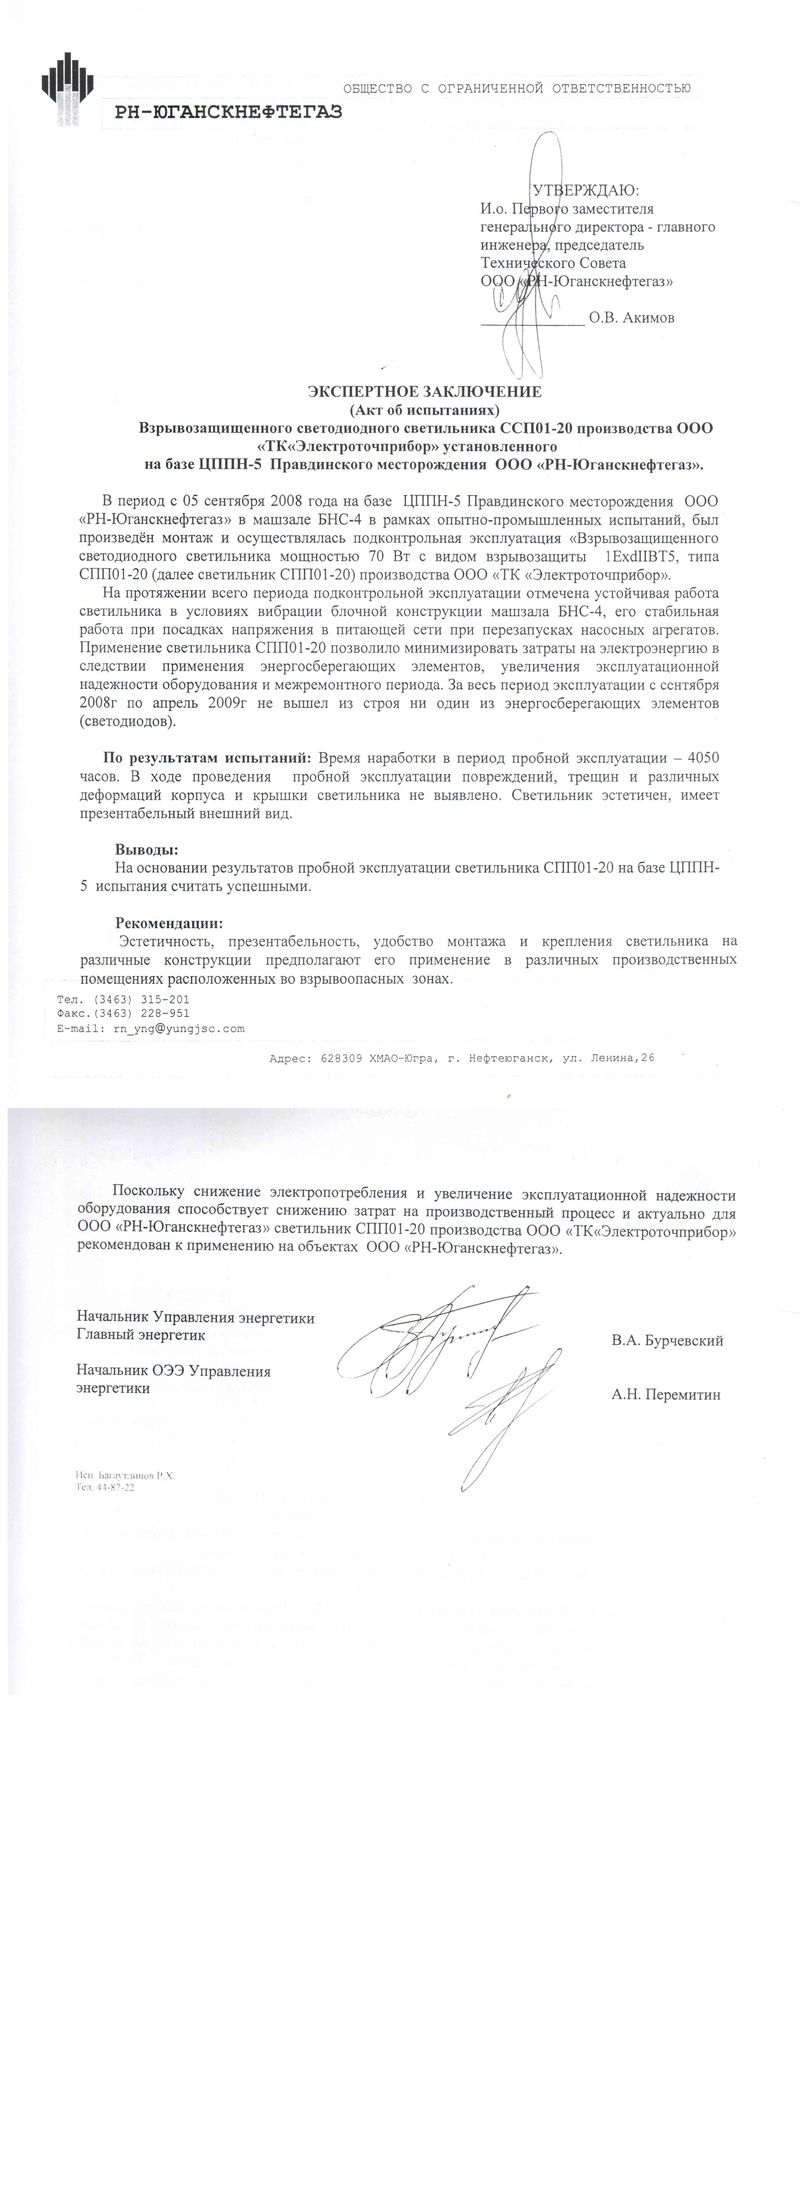 Акт об испытаниях светильника ССП01-20 установленного на базе ЦППН-5 Правдинского месторождения ООО РН-Юганскнефтегаз